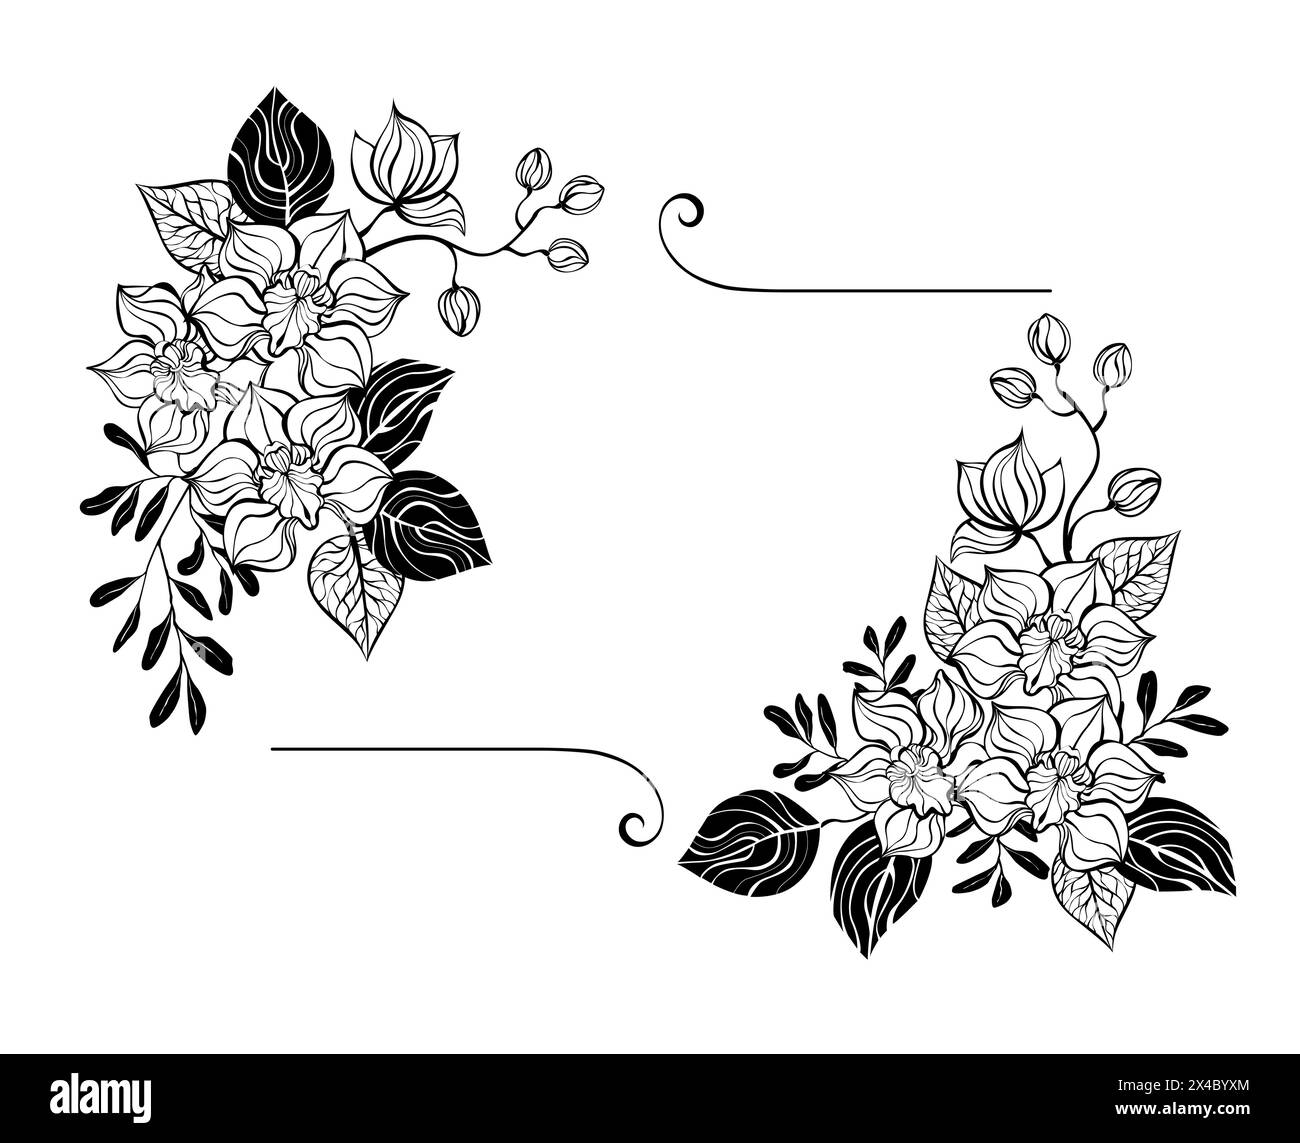 Rechteckige florale Komposition von künstlerisch gezeichneten, schwarz konturierten Orchideen mit Silhouetten von Pistazien und Eukalyptuszweigen auf weißem Hintergrund. Konz Stock Vektor